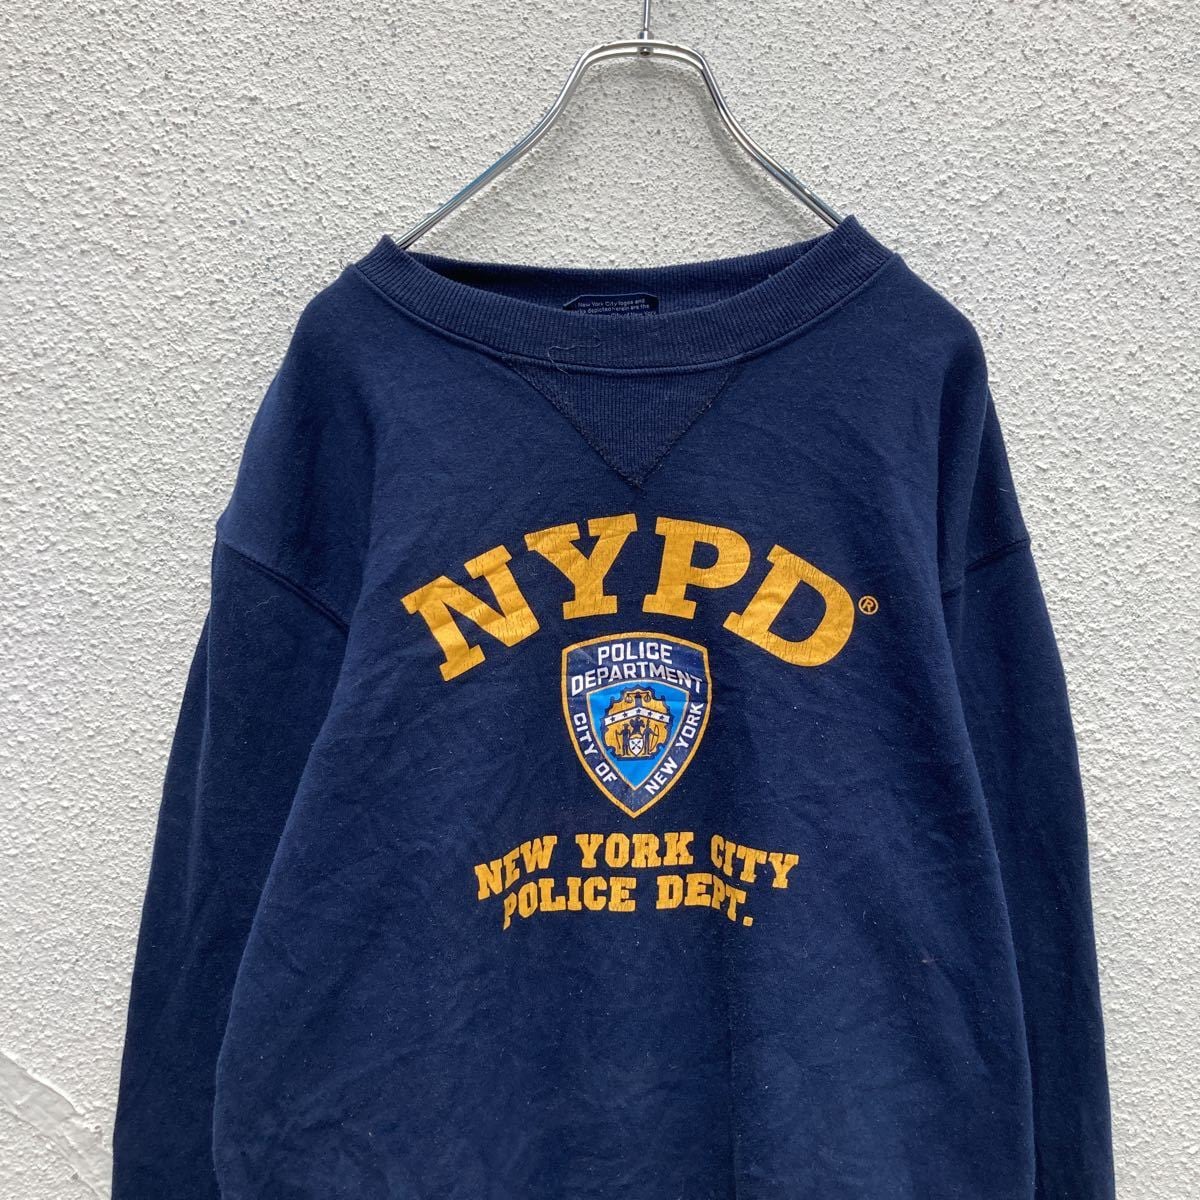 NYPD ロゴプリントスウェット Vガゼット 丸首 トレーナー ニューヨーク市警察 ネイビー (メンズ S)   O3503